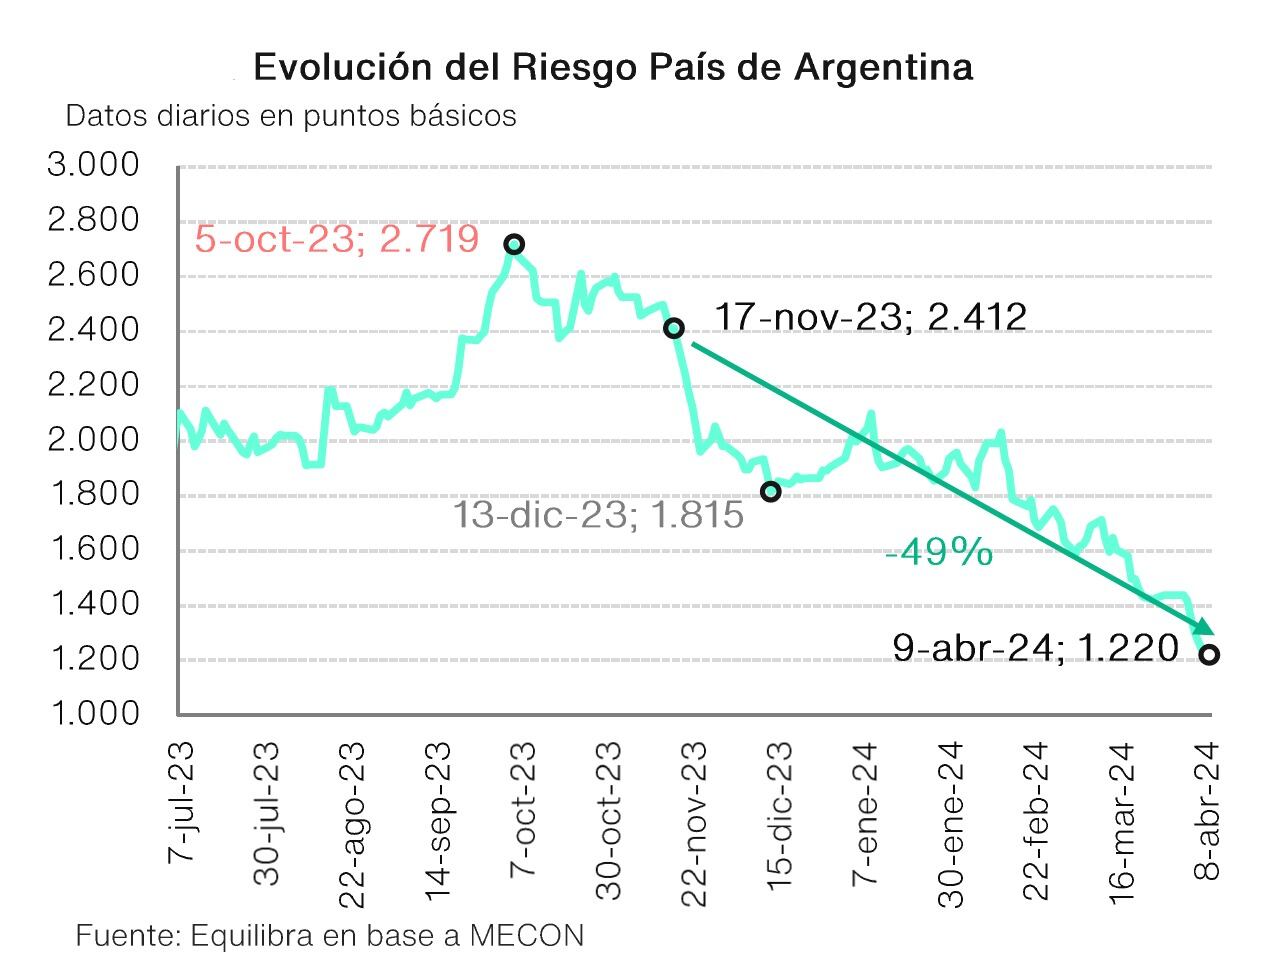 Gráfico sobre la caída del riesgo país de la Argentina